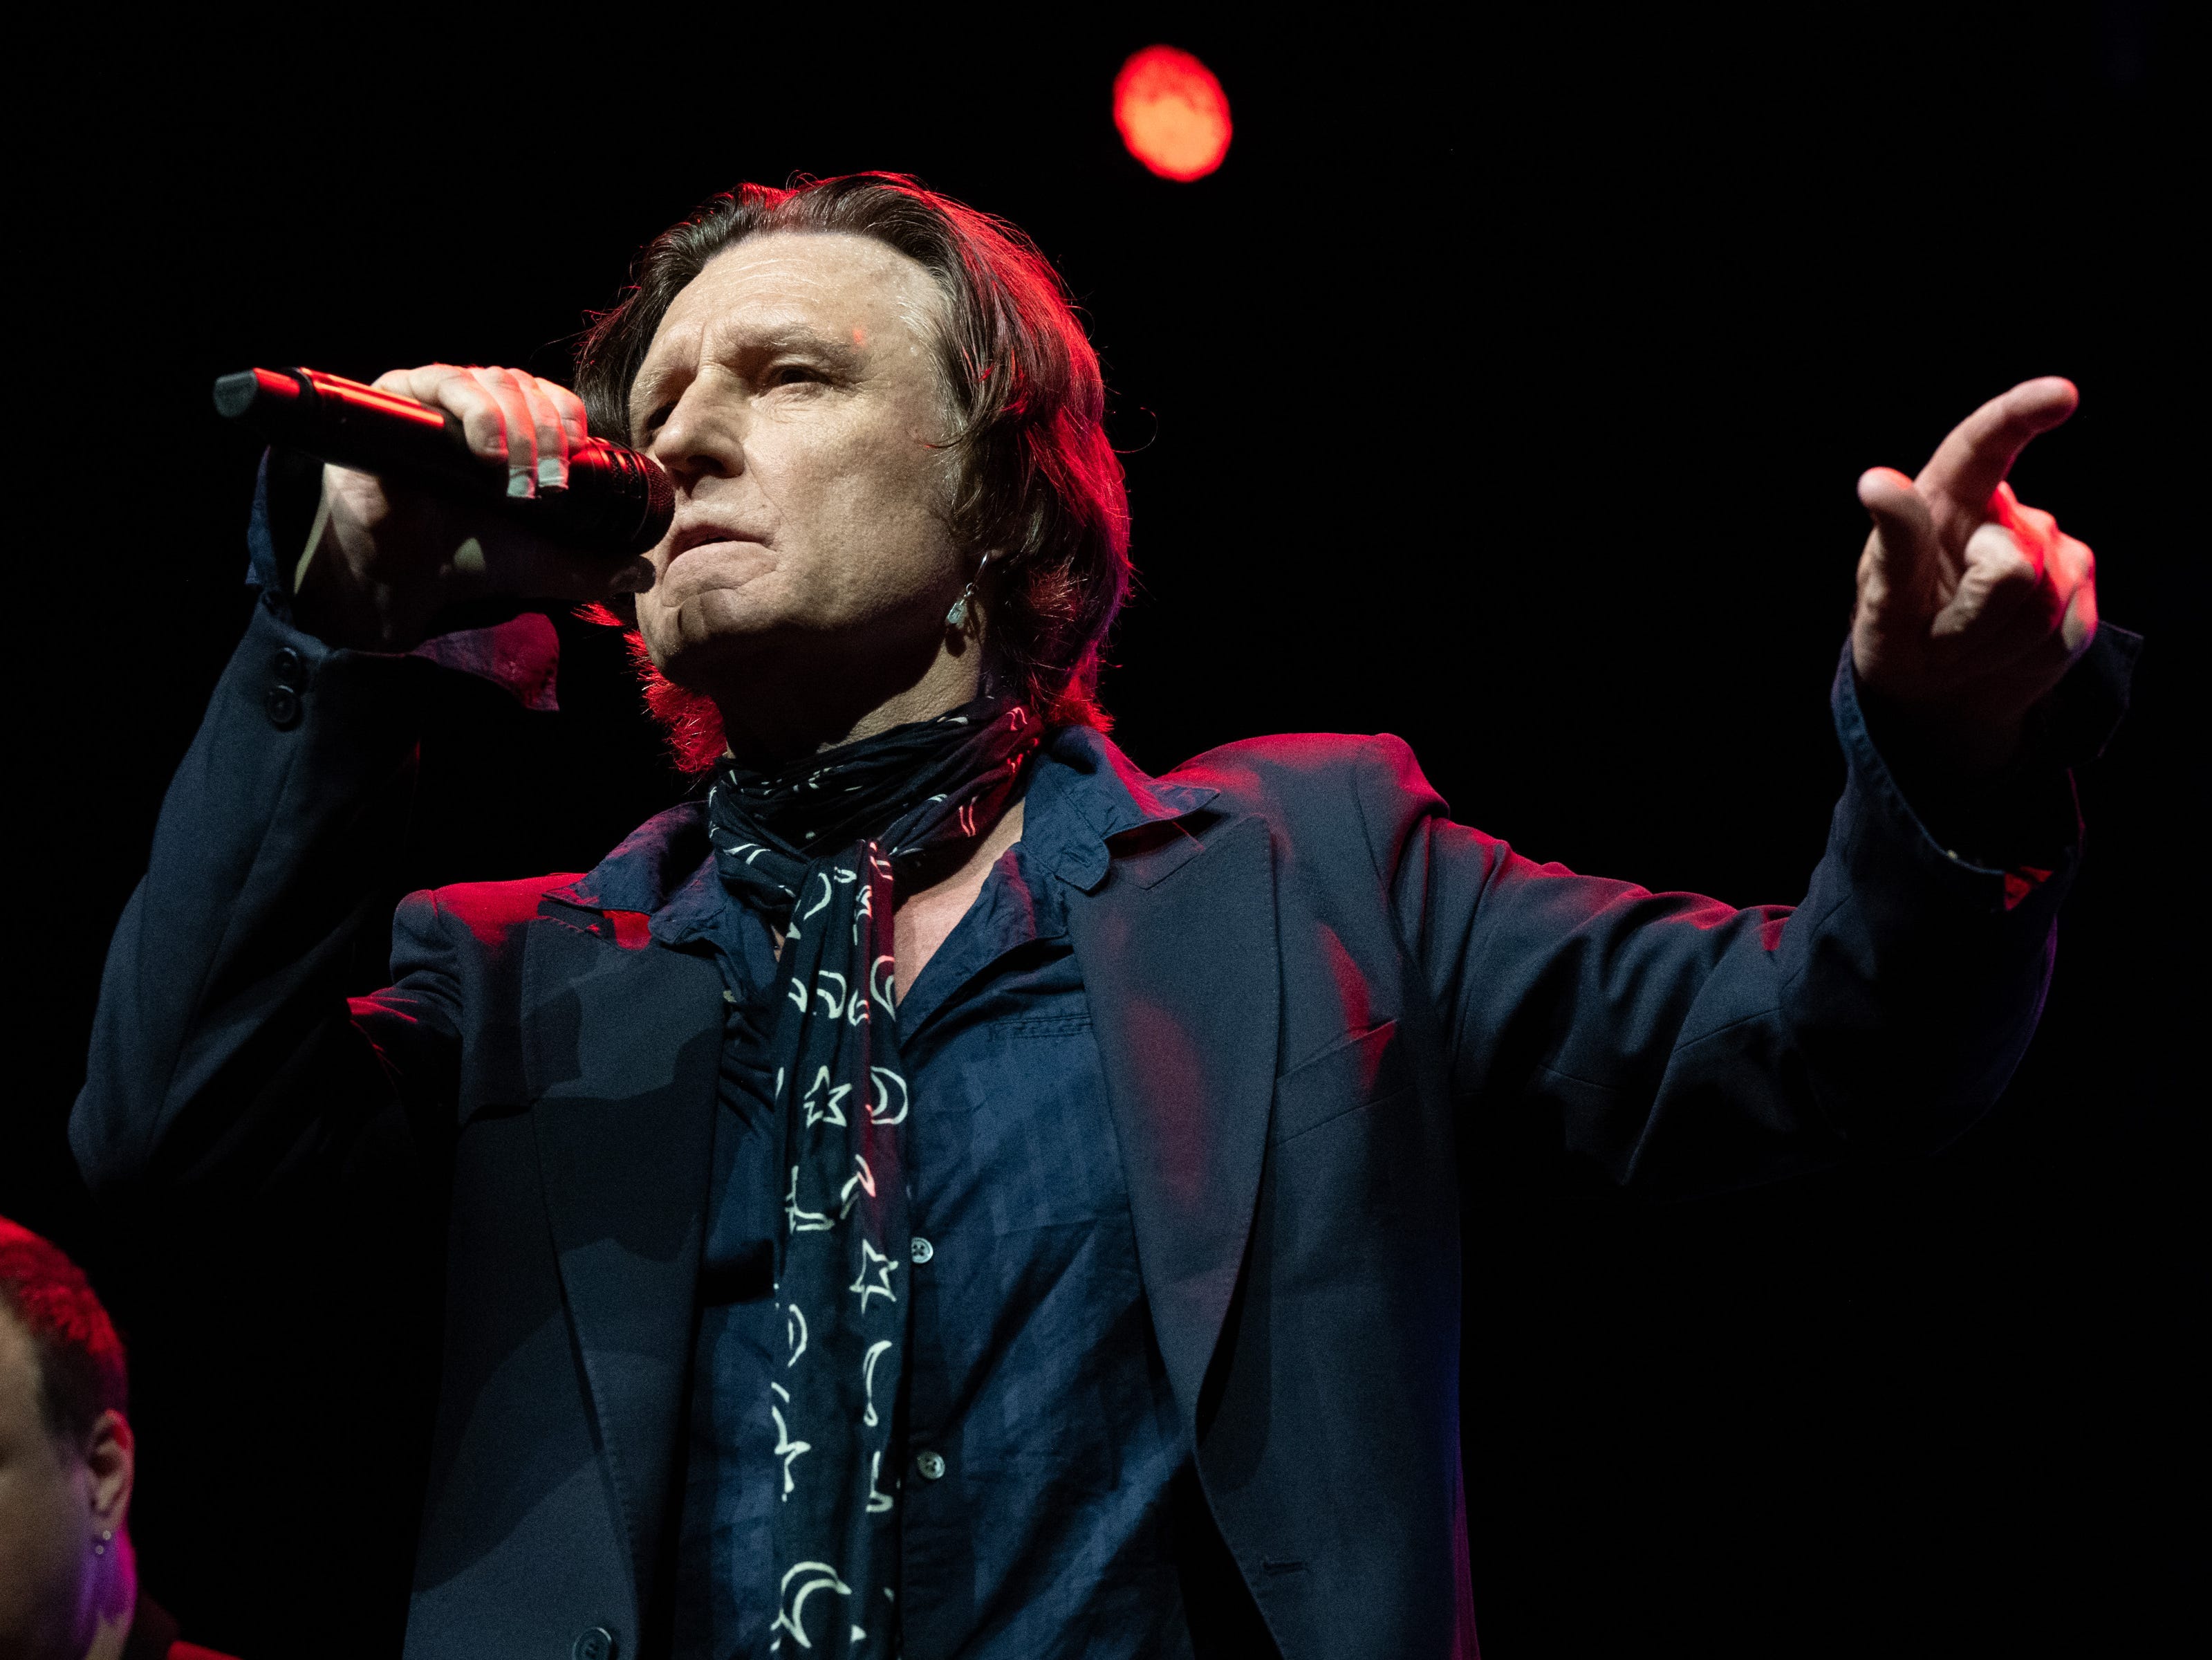 Sänger John Waite auf der Bühne, hält ein Mikrofon hoch und gestikuliert mit der linken Hand.  Er trägt ein dunkelblaues Hemd, einen schwarzen Blazer und einen schwarz-weiß gemusterten Schal